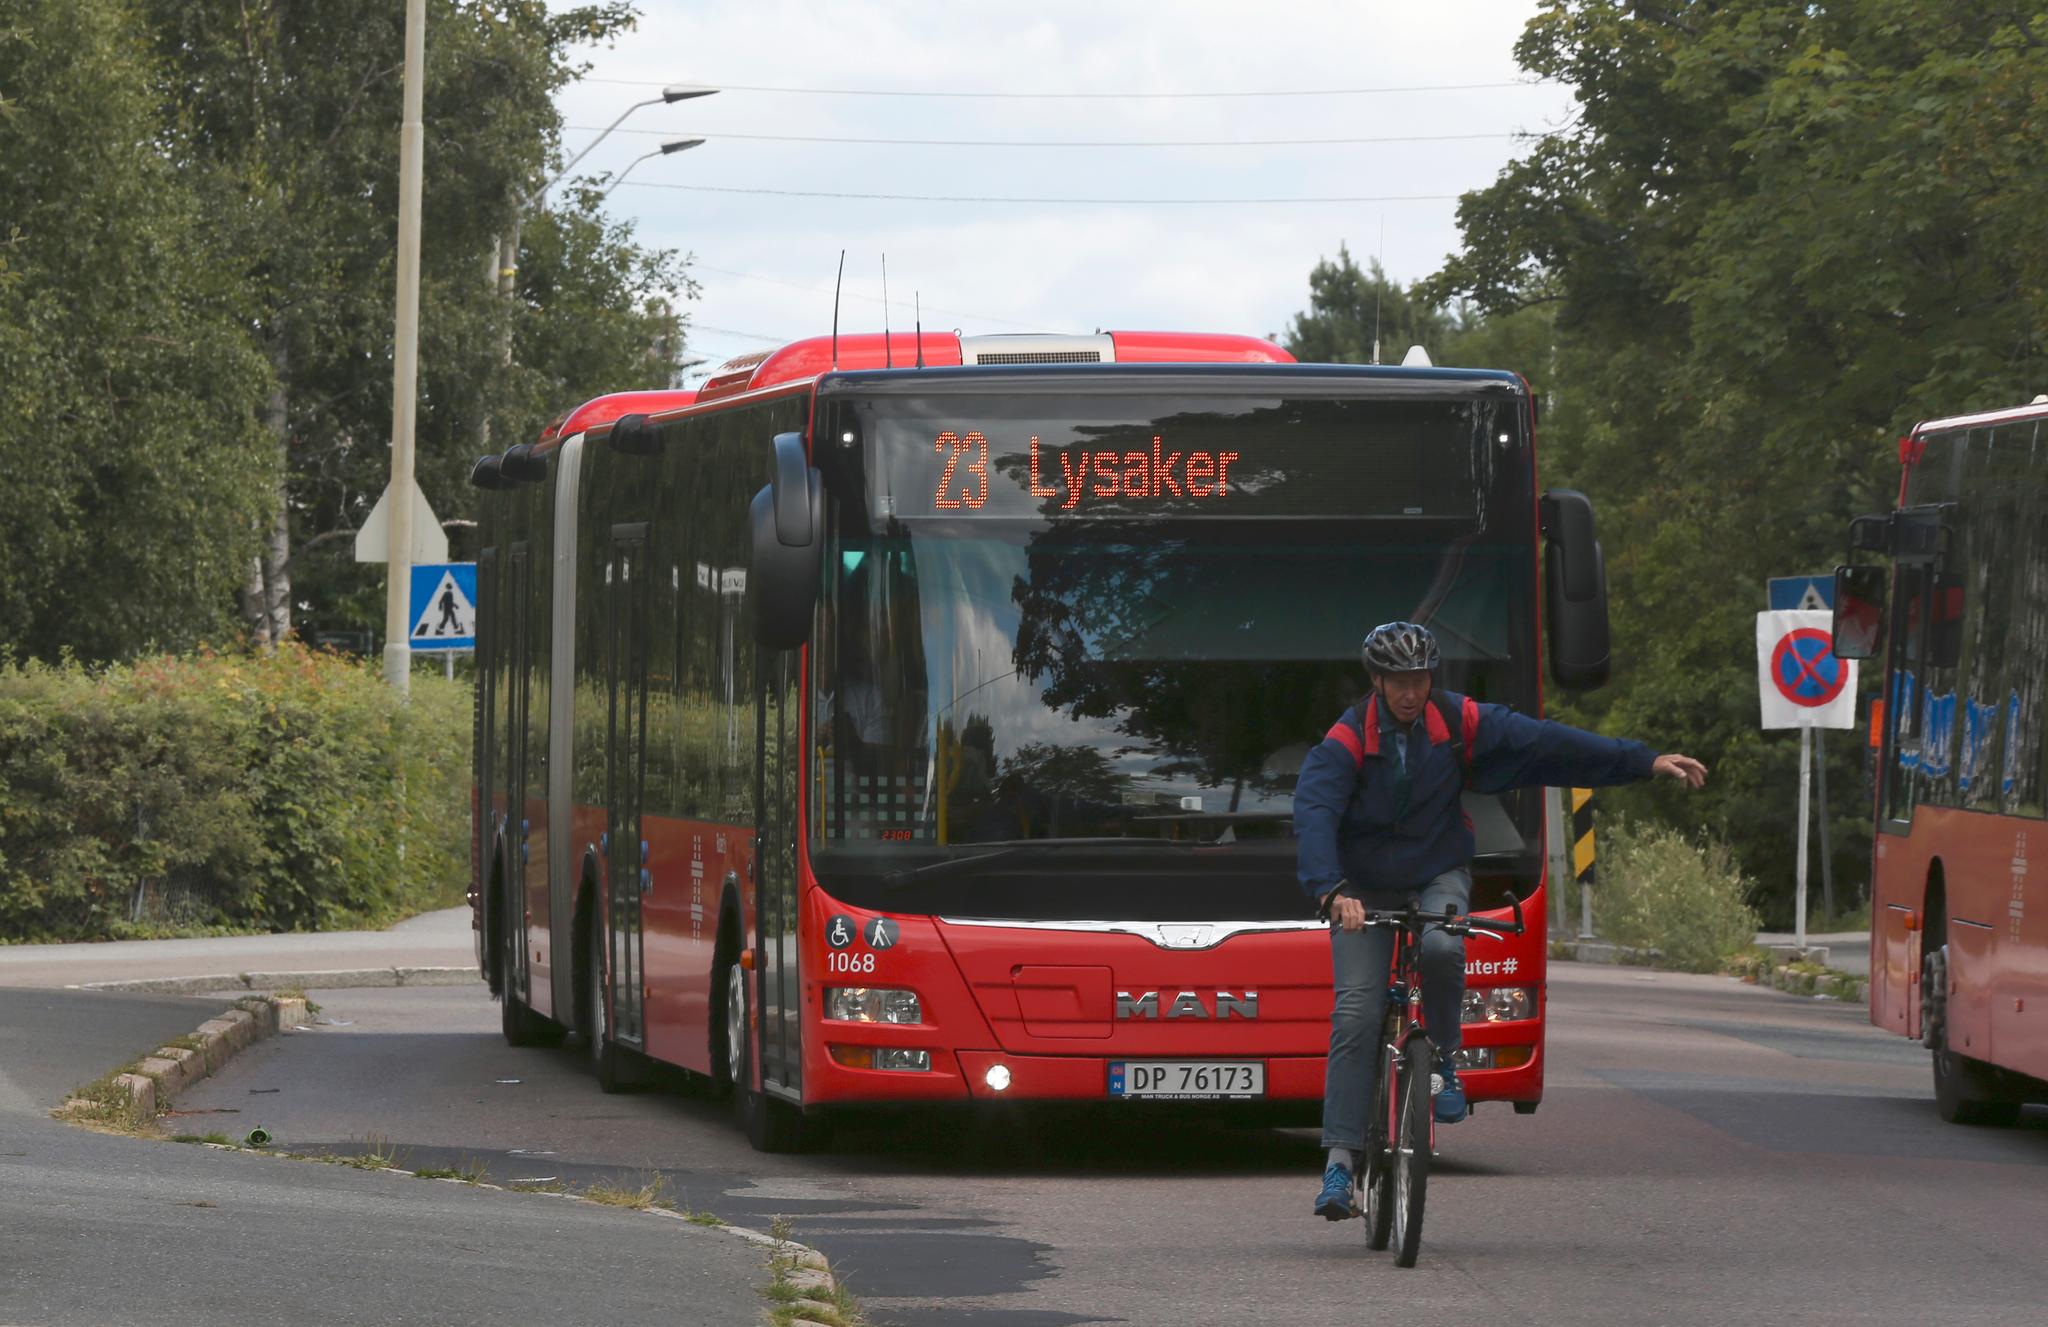  Tidligere i sommer skrev Aftenposten om glohete busser og frustrerte Ruter-passasjerer. Aldri før har transportselskapet fått flere klager på varme transportmidler.